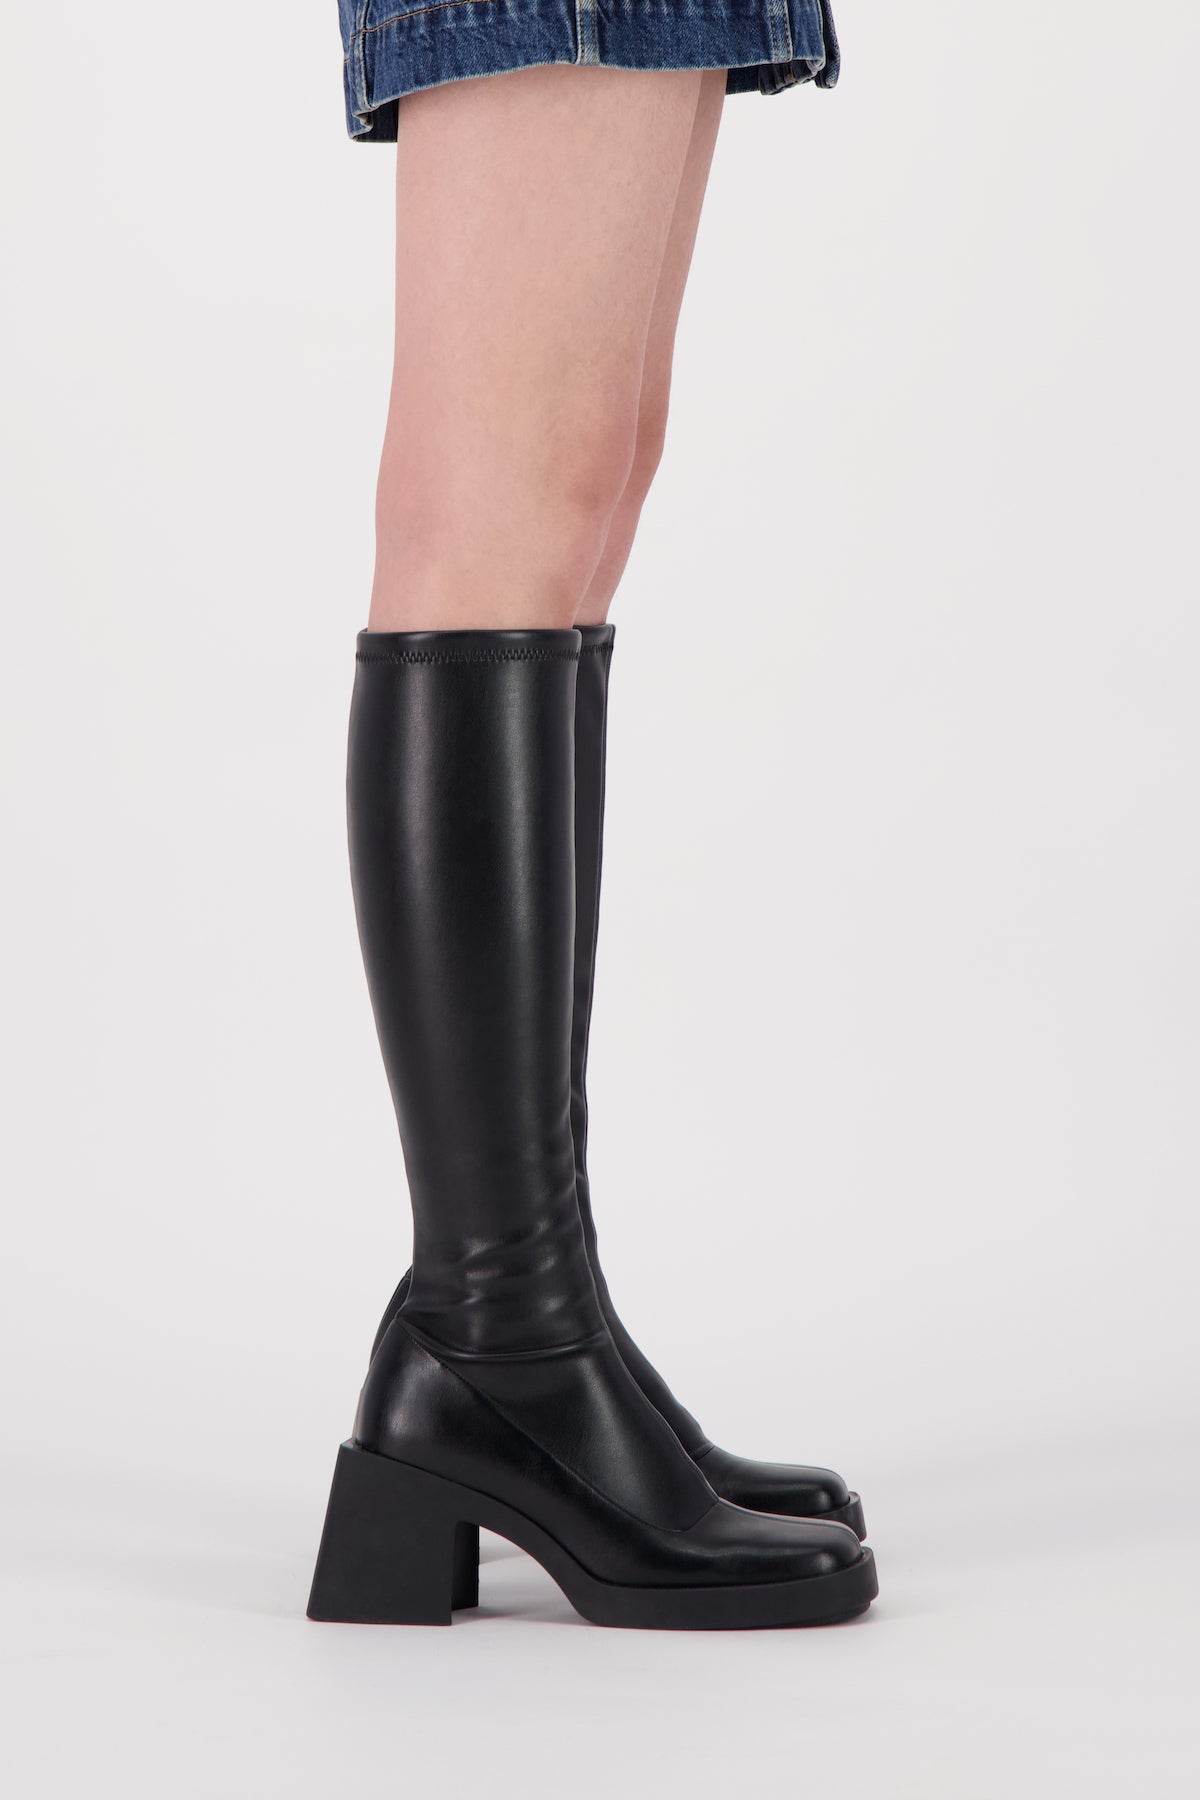 Chloë black high boots